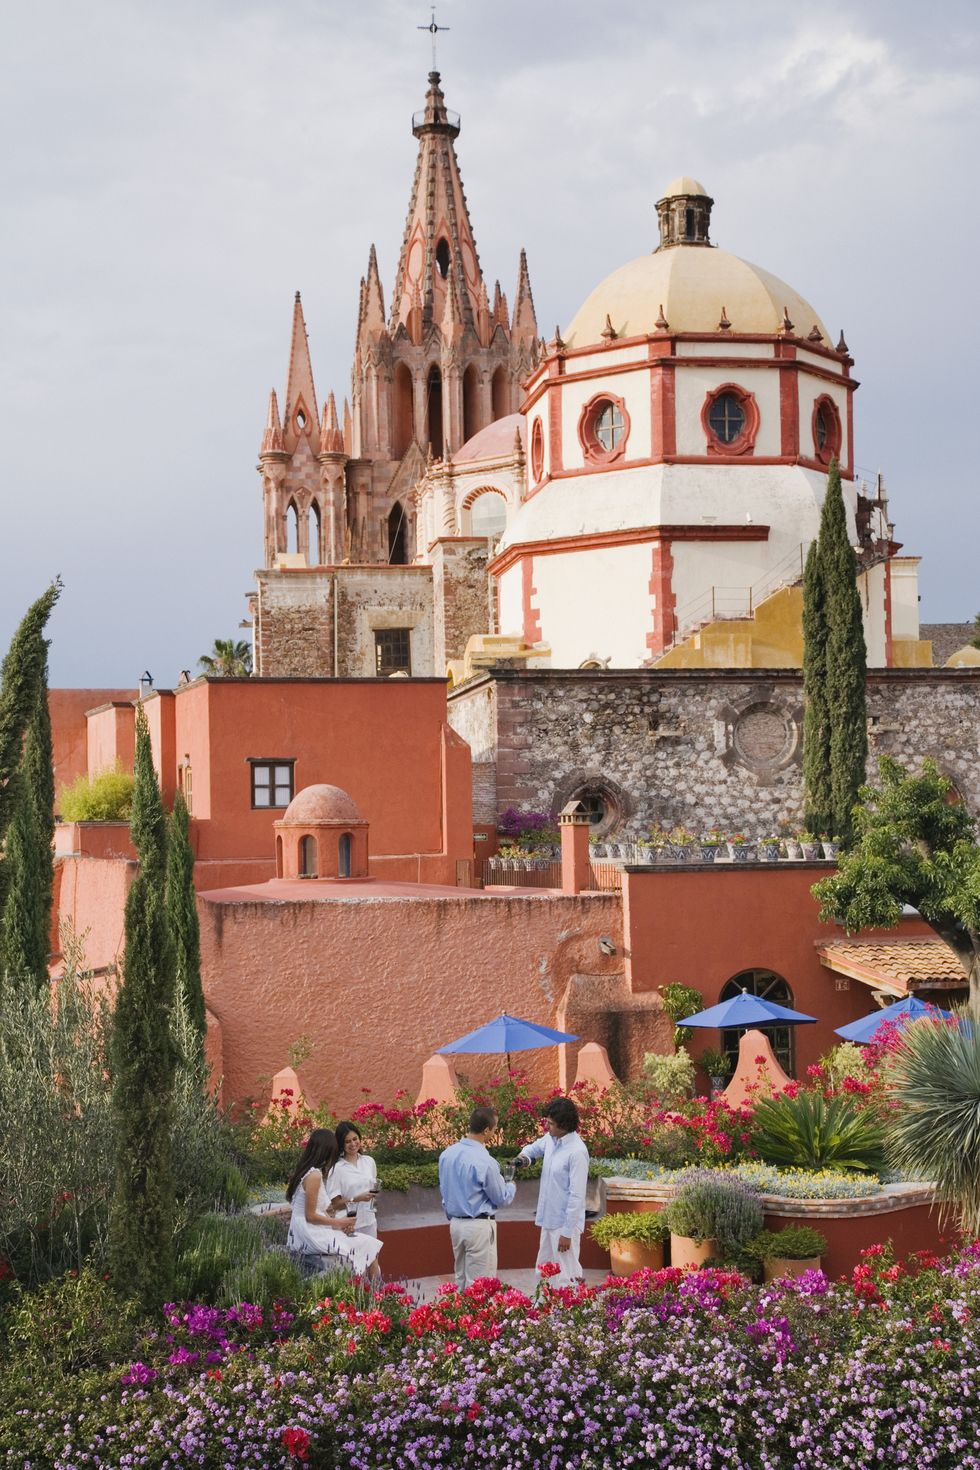 San Miguel de Allende Nền nhà thờ của cặp đôi người Tây Ban Nha HÌNH ẢNH CỦA JEREMY WOODHOUSE GETTY Với các tòa nhà được sơn đầy màu sắc nằm trong khung cảnh đồi núi và một số món ăn, lễ hội nghệ thuật và khu mua sắm thủ công tốt nhất trên thế giới, San Miguel de Allende dễ dàng trở thành một trong những thành phố nổi tiếng nhất trên thế giới. Bạn sẽ đặc biệt yêu thích nó nếu là người yêu thích kiến ​​trúc baroque của Tây Ban Nha, những bông hoa đầy màu sắc và thời tiết ấm áp.